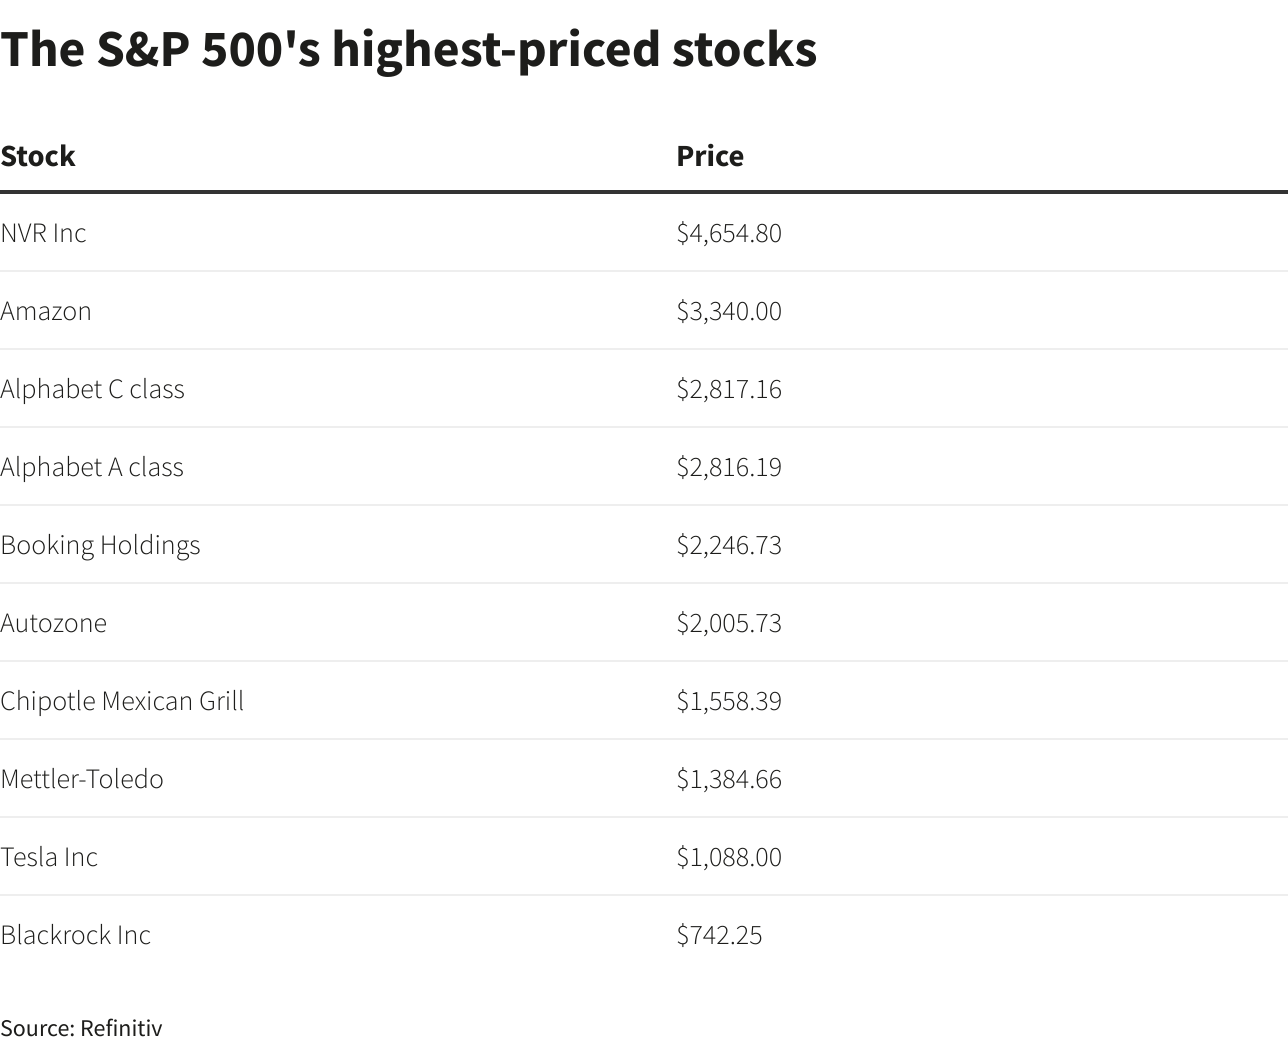 Najlepsze akcje S&P 500